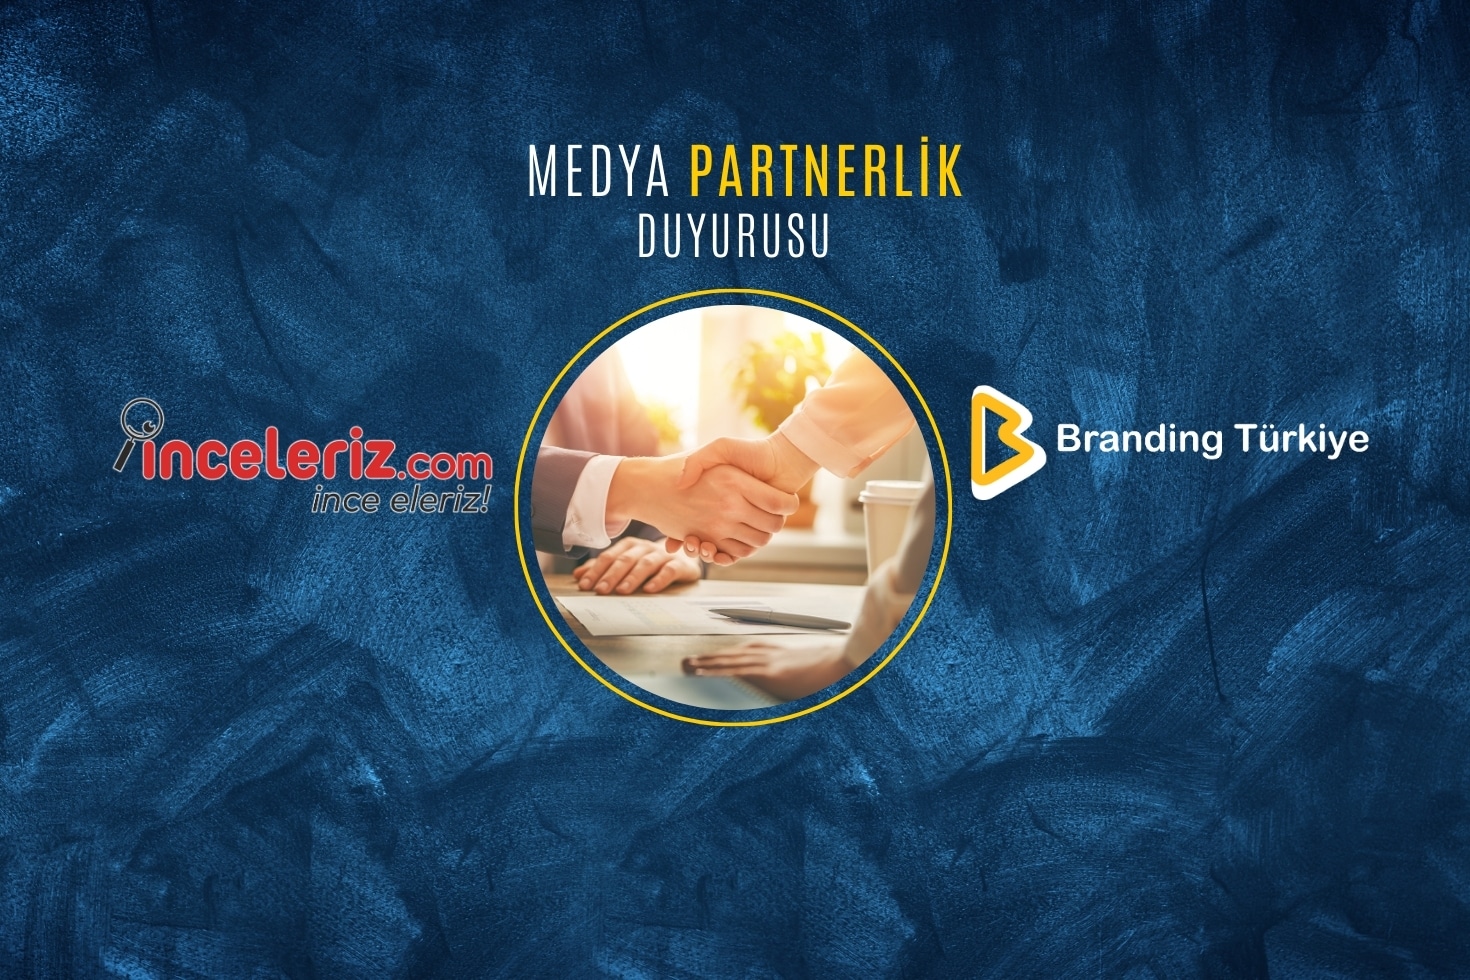 İnceleriz.com ve Branding Türkiye Medya Partnerliği